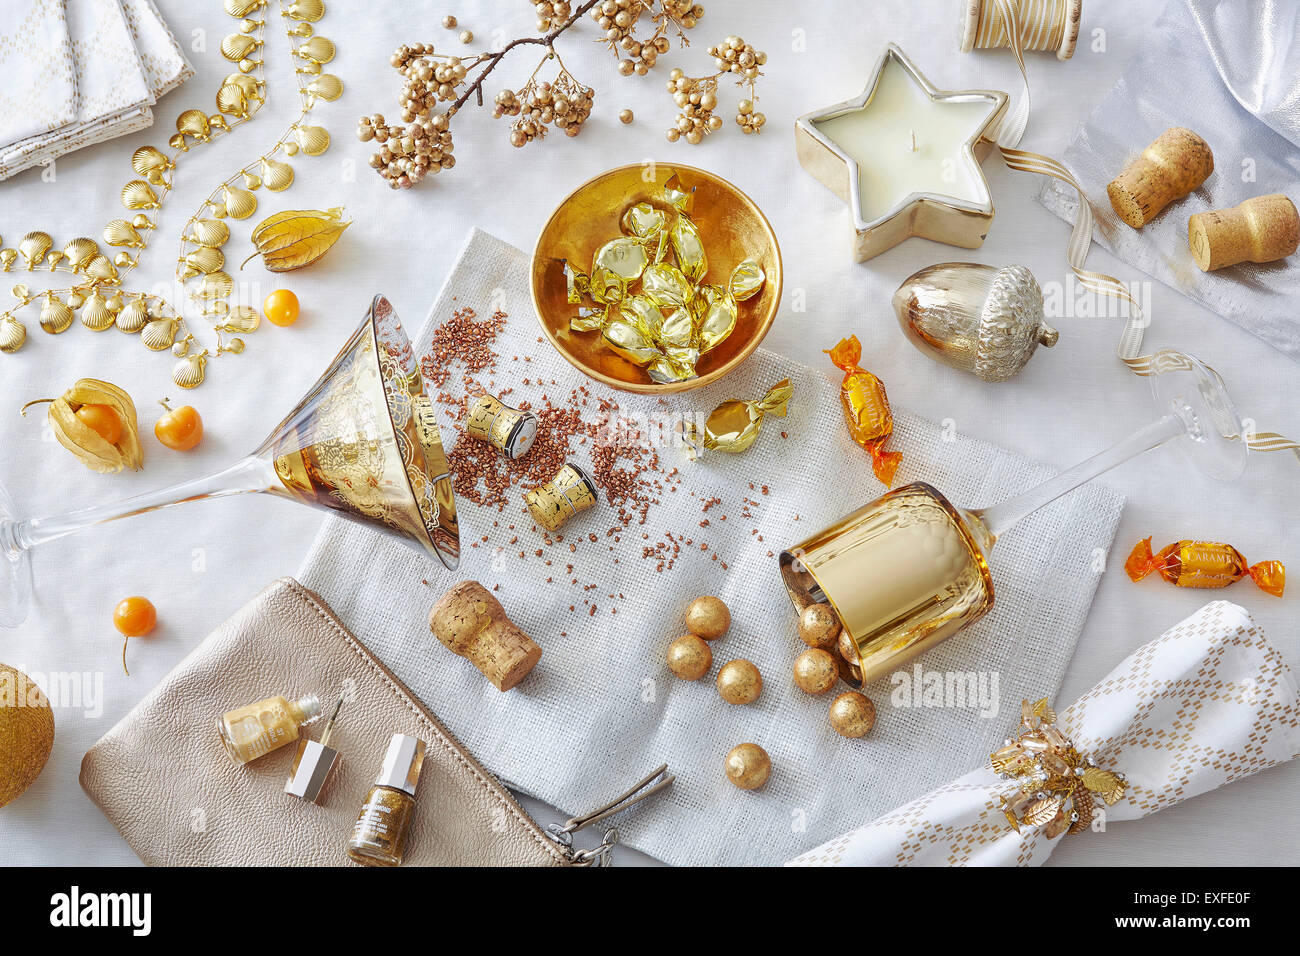 Bianco e oro colorata vita ancora con dolciumi e varietà di oggetti Foto Stock